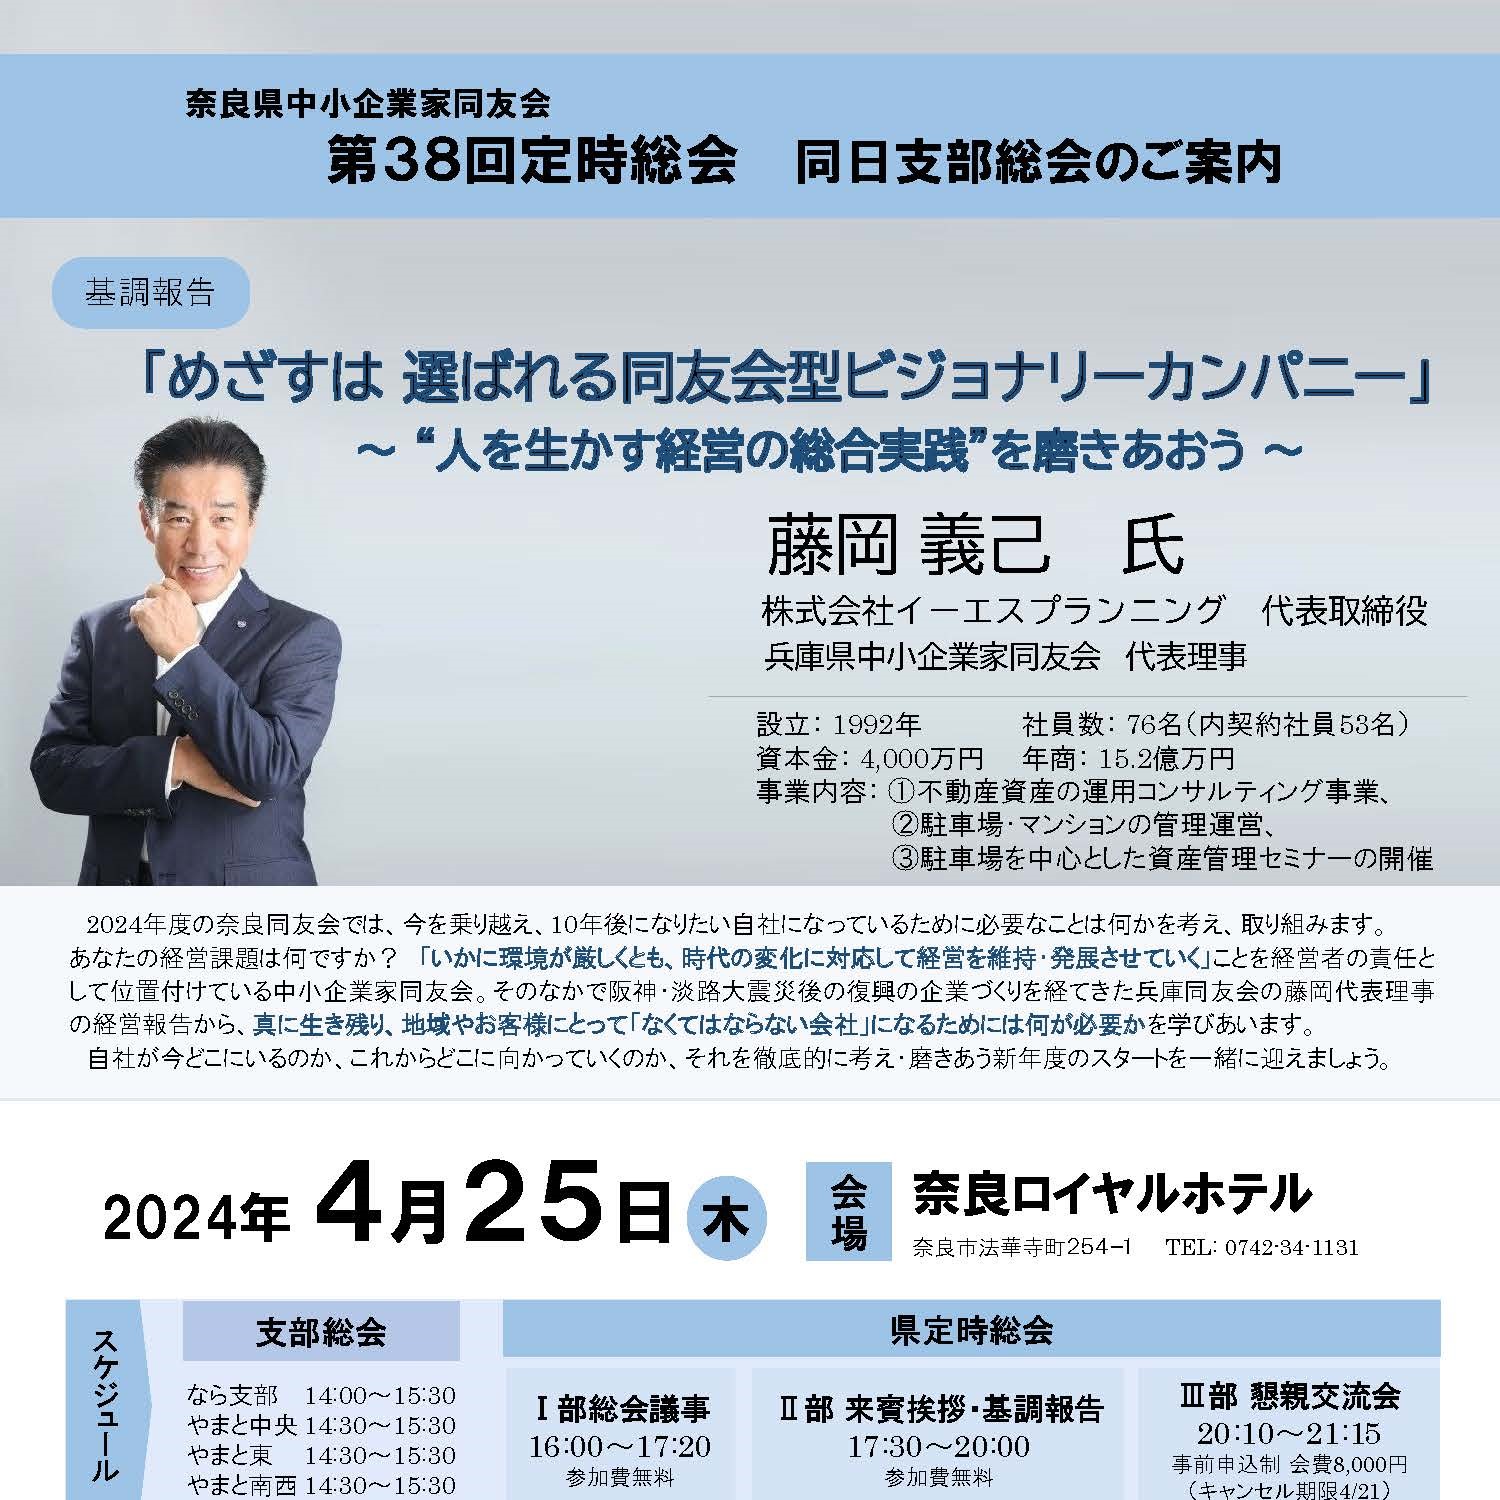 【奈良県中小企業家同友会主催】4/25(土)第38回定時総会「基調報告」にて講演致します